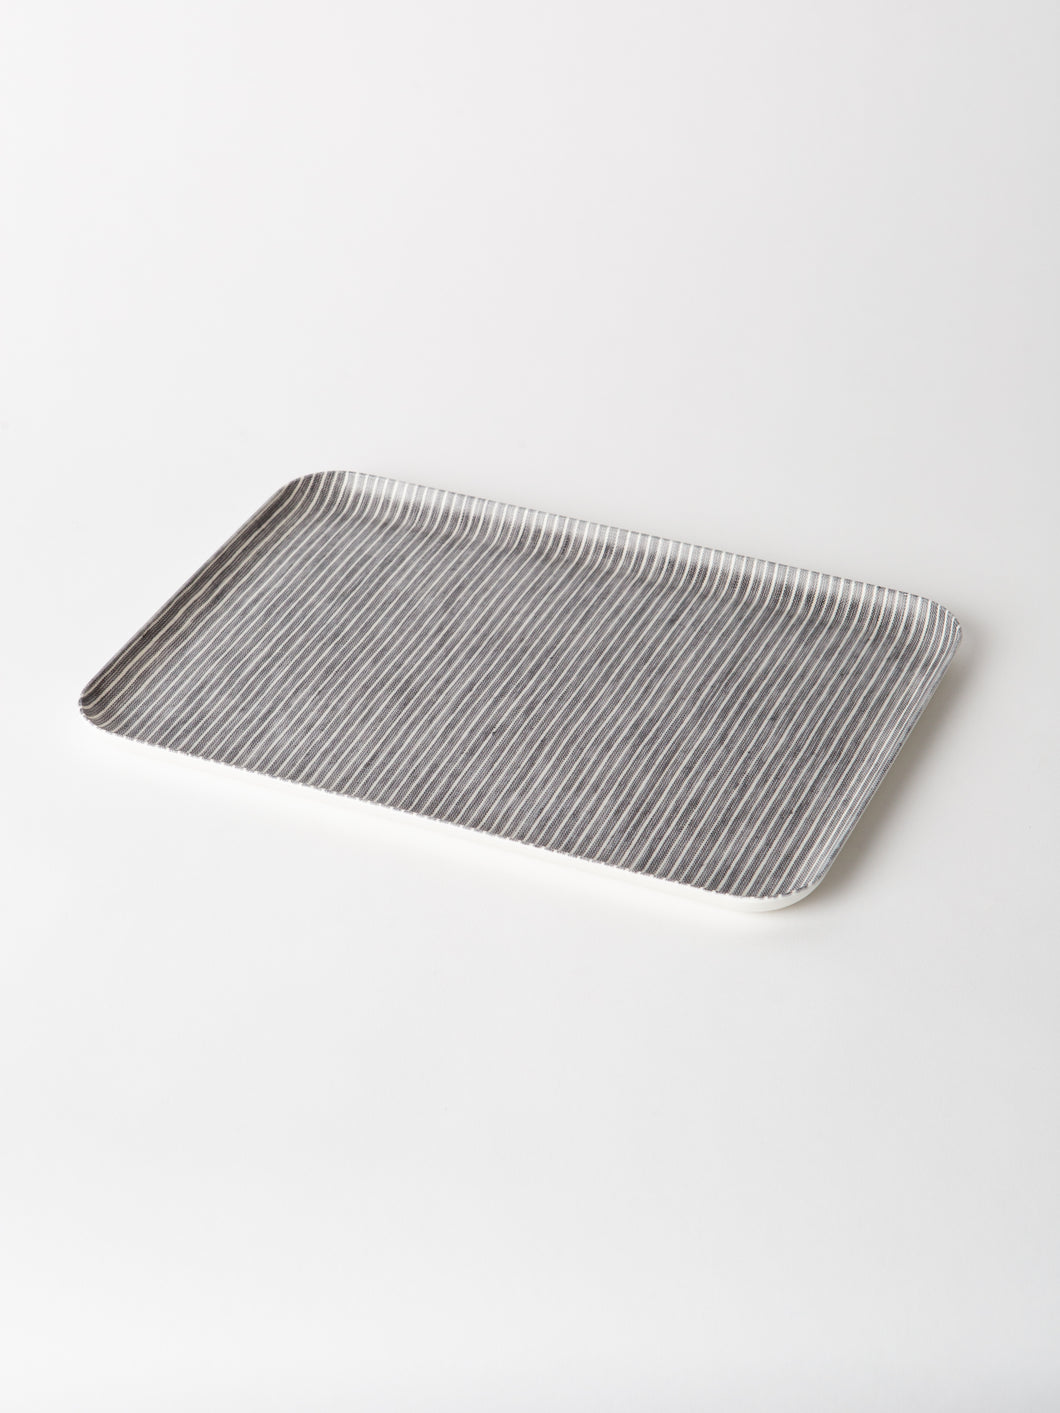 Linen Coated Tray Medium